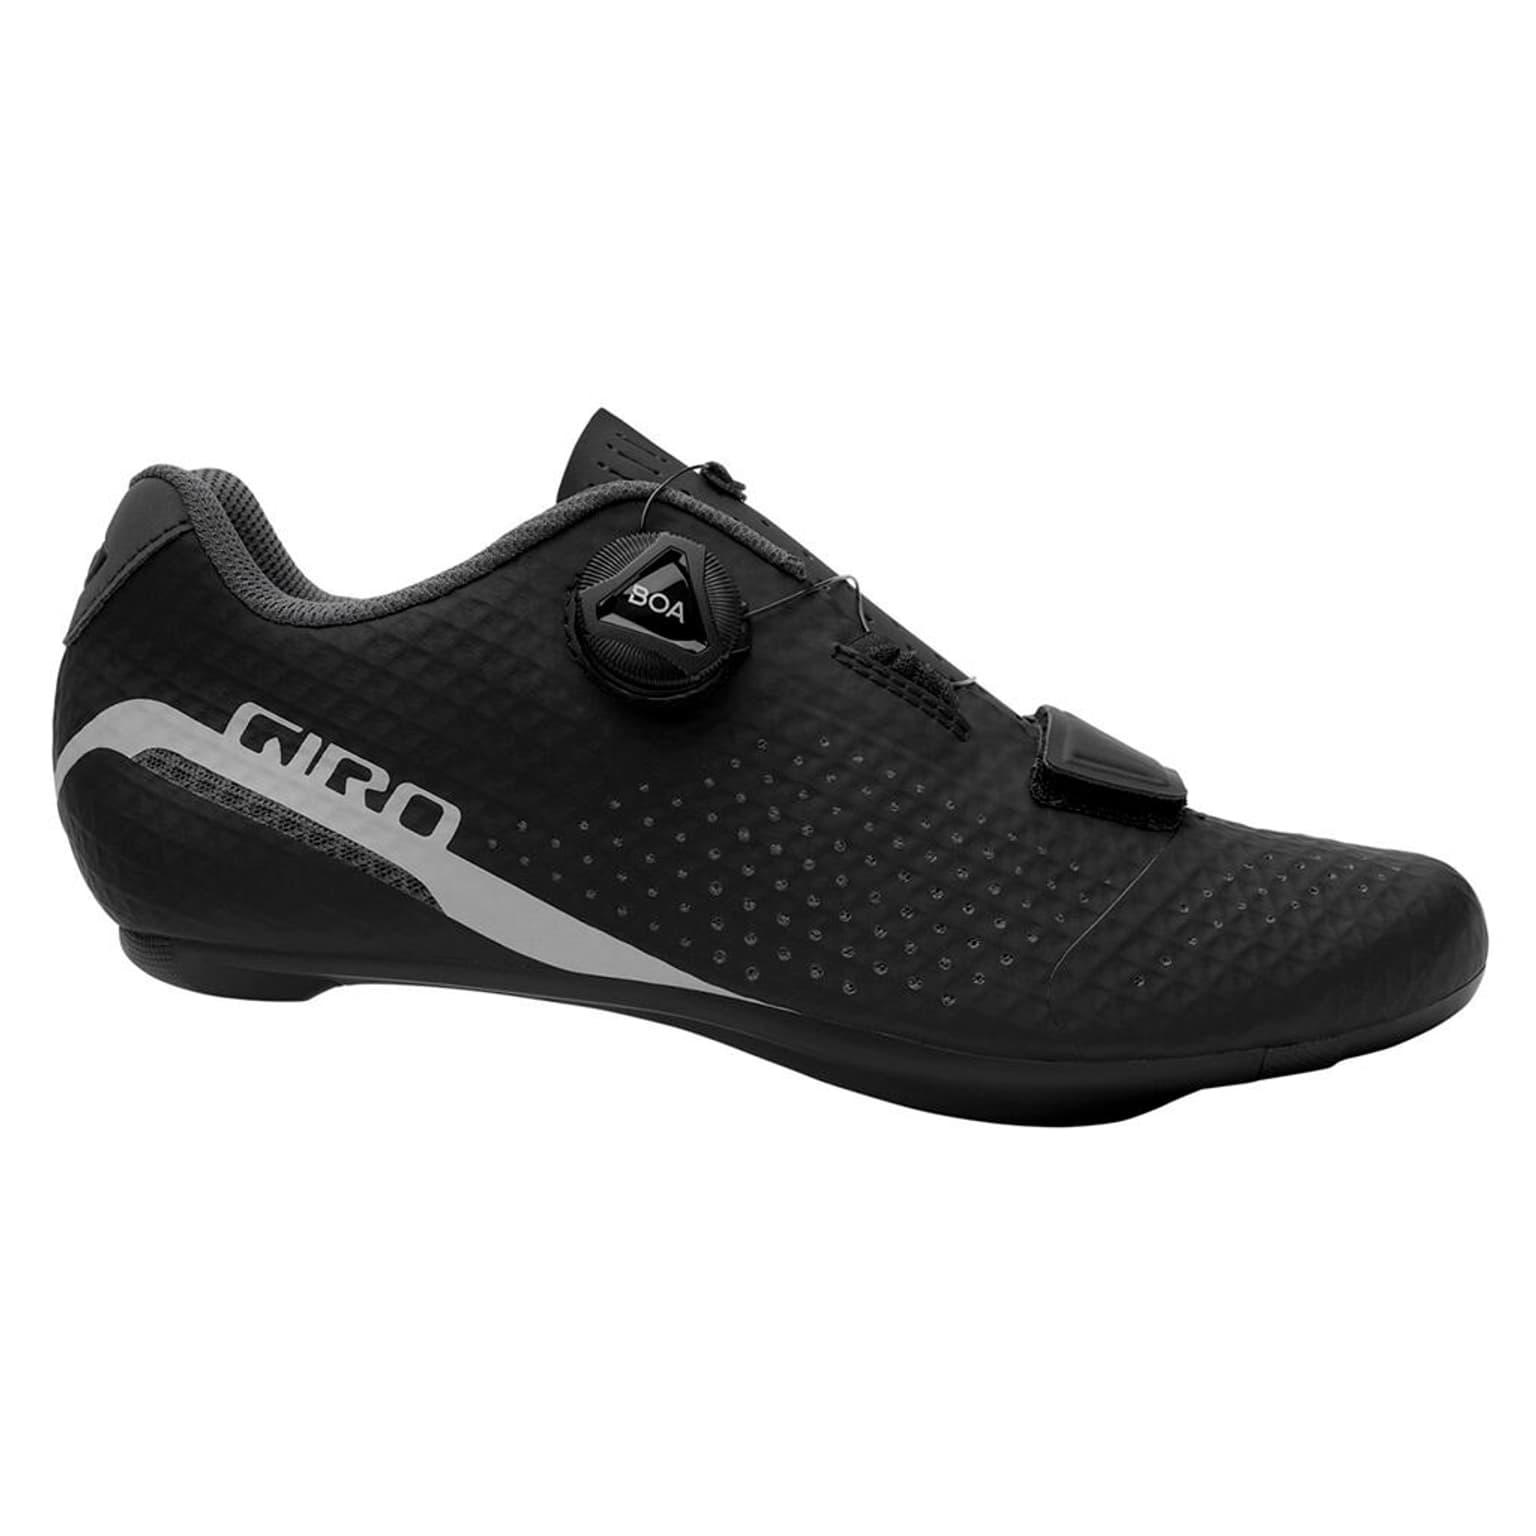 Giro Giro Cadet W Shoe Veloschuhe nero 1